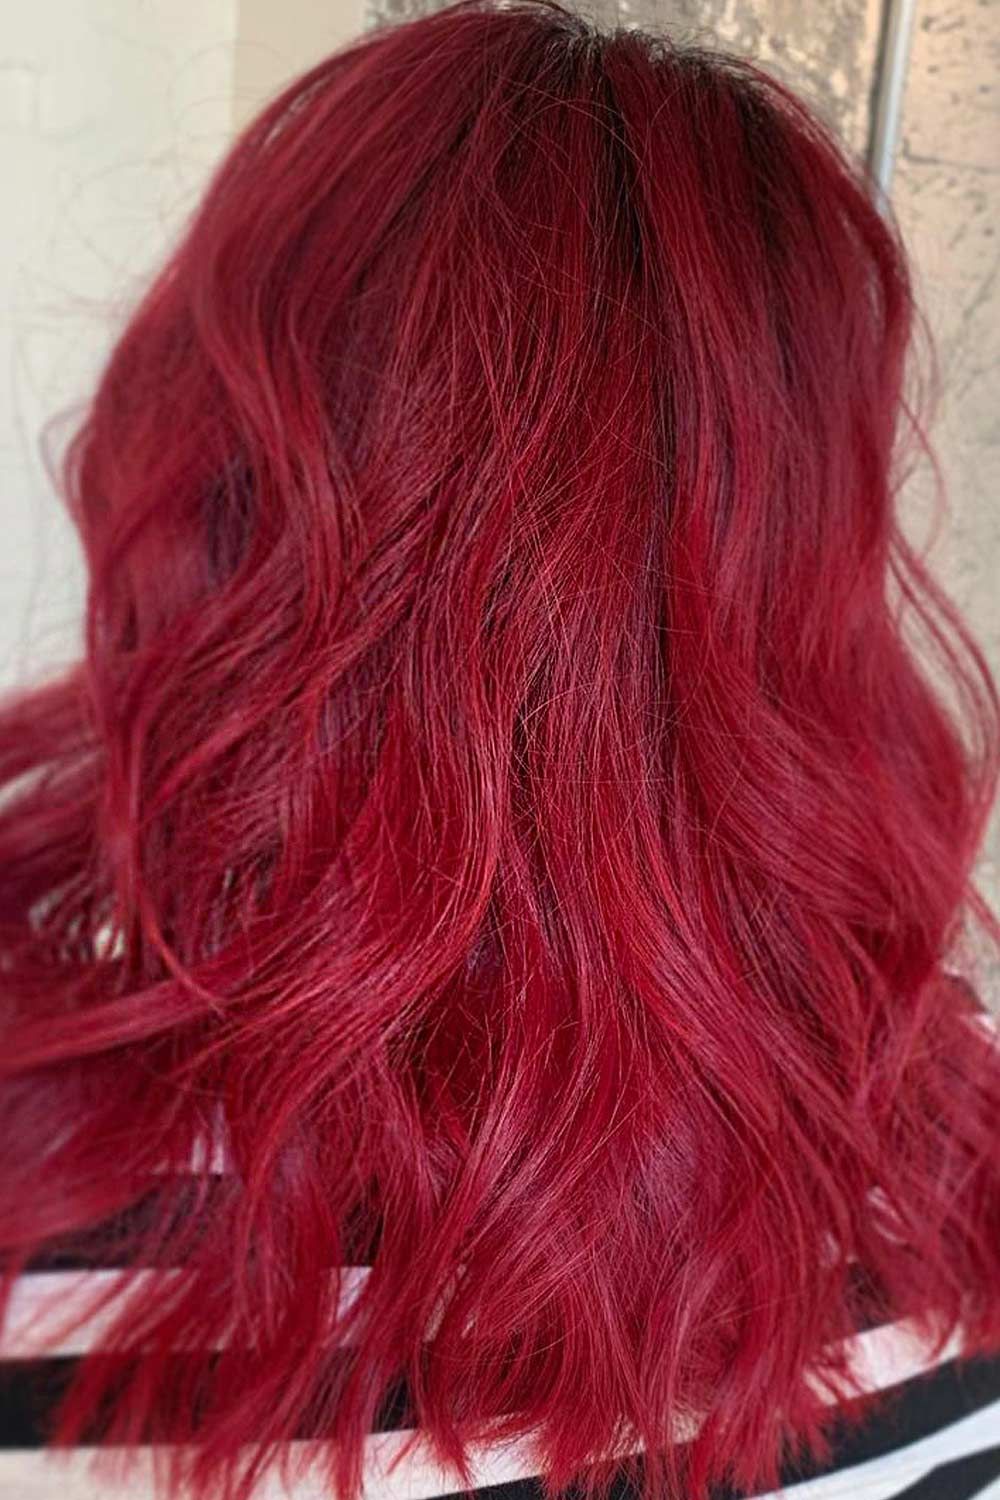 Bright Red Hair Ideas